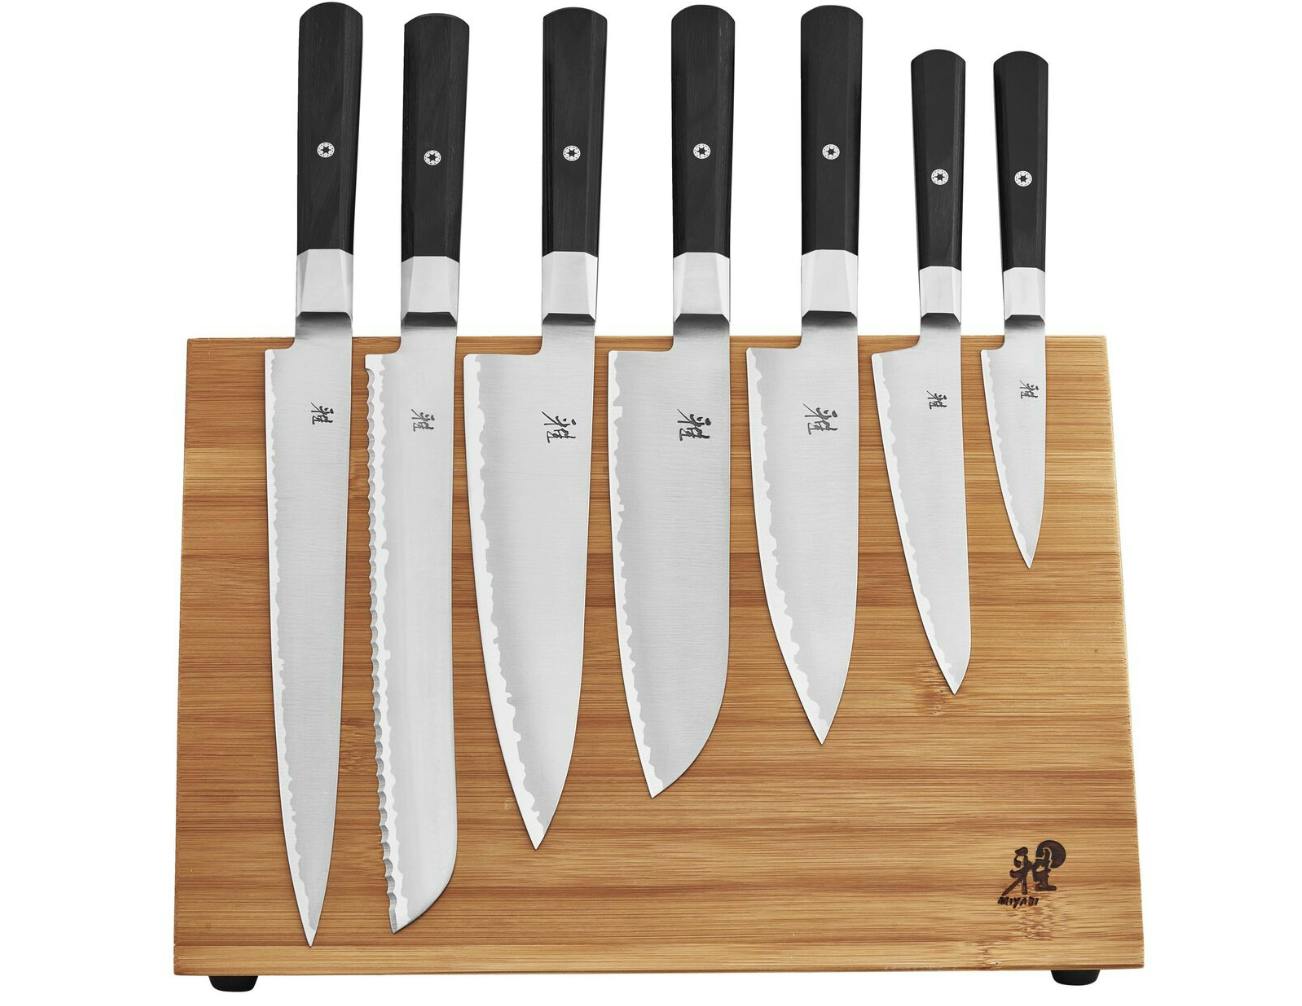 The Miyabi Koh 400FC Knife Set. 